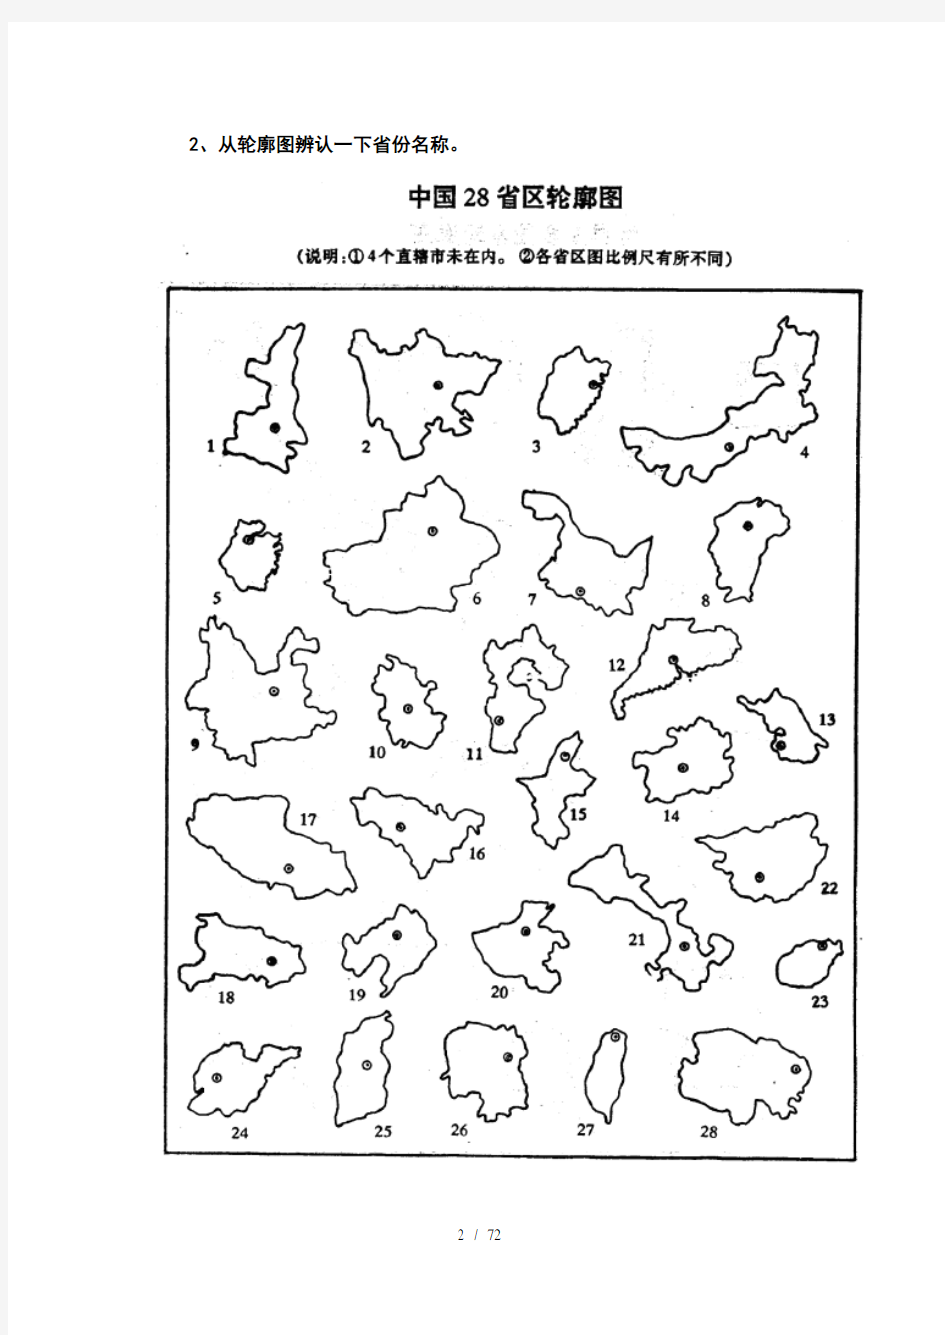 中国地理空白图(政区、分省轮廓、地形、铁路空白图